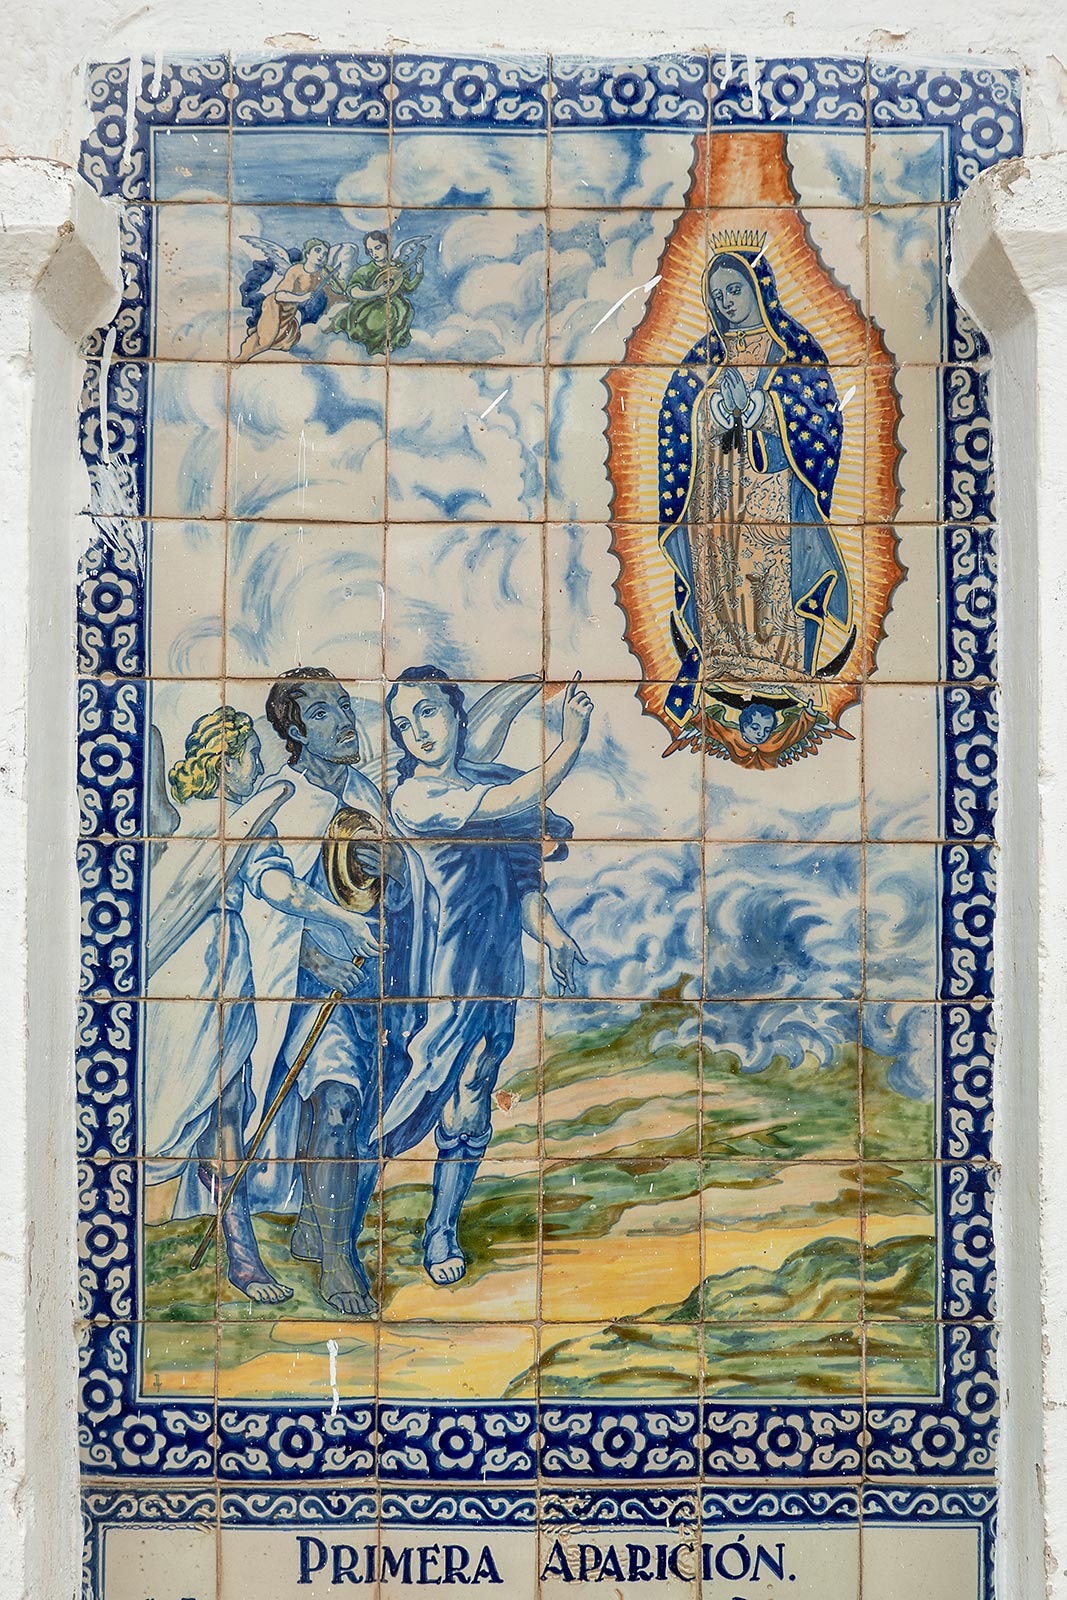 Imagem pintada em azulejos da primeira aparição da Virgem Maria a Juan Diego, Santuario del Señor del Sacromonte Amecameca